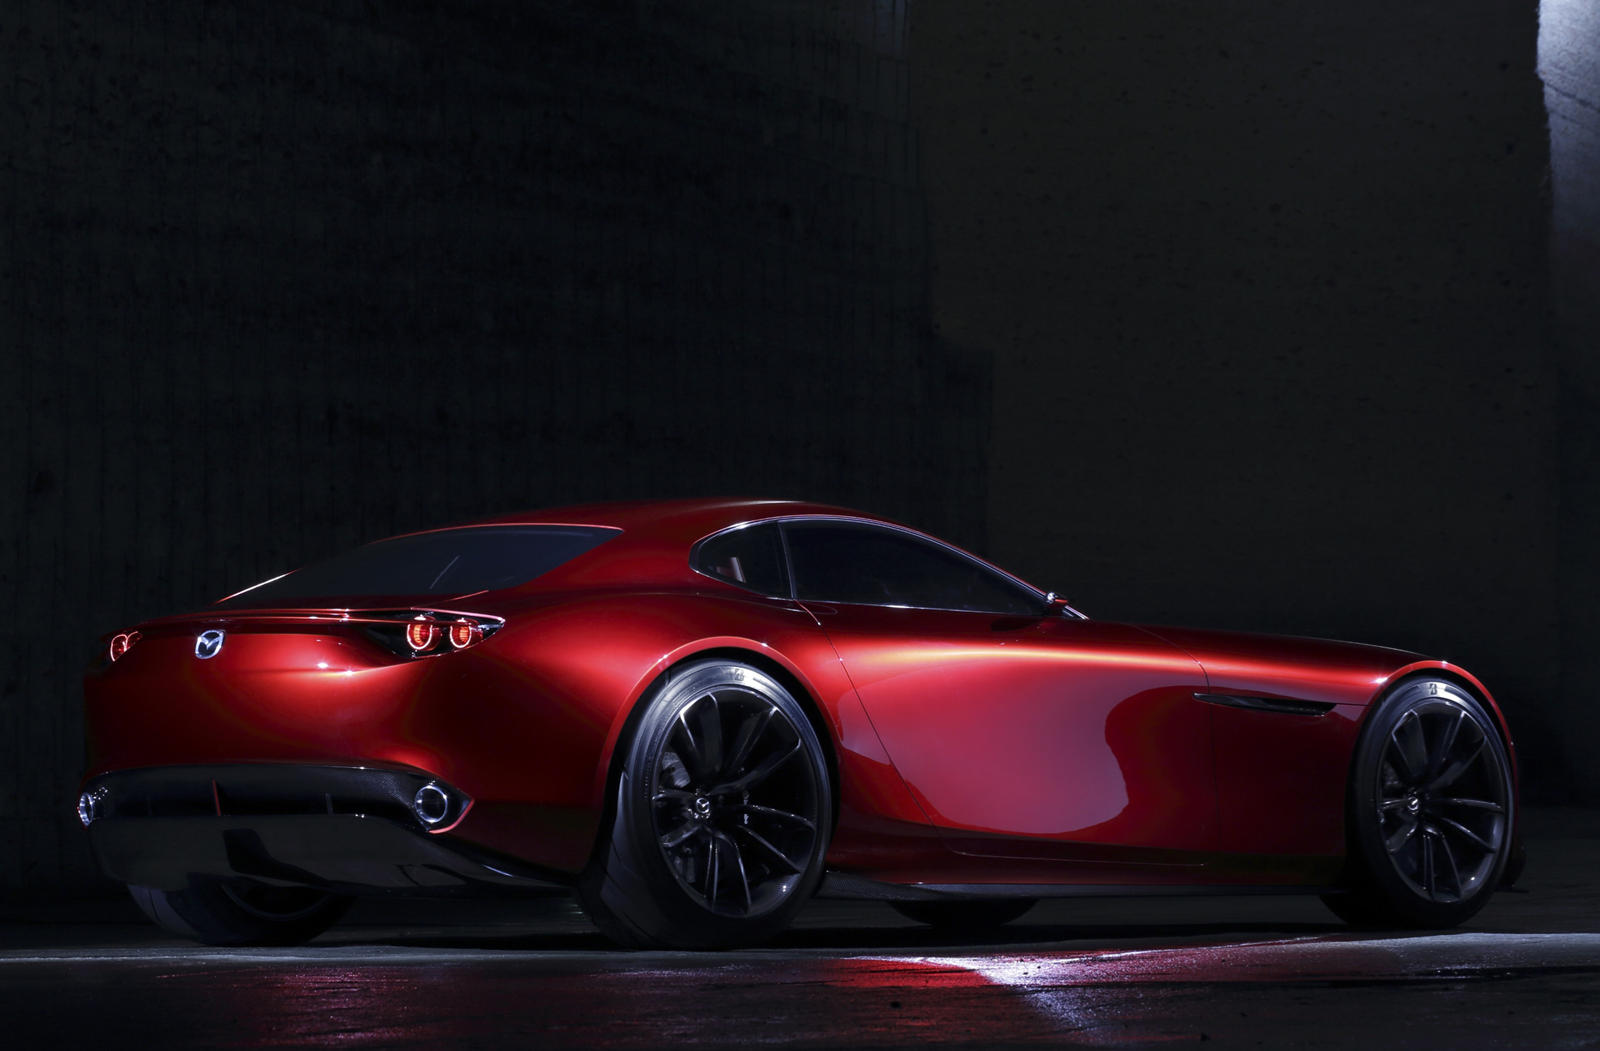 Согласно отчету Car and Driver, следующая Mazda 6, ожидаемая где-то в 2022 году, будет оснащаться платформой с продольным расположением двигателя с задним приводом и рядным двигателем. Другими словами, Mazda берет страницу прямо из давней пьесы BMW. 